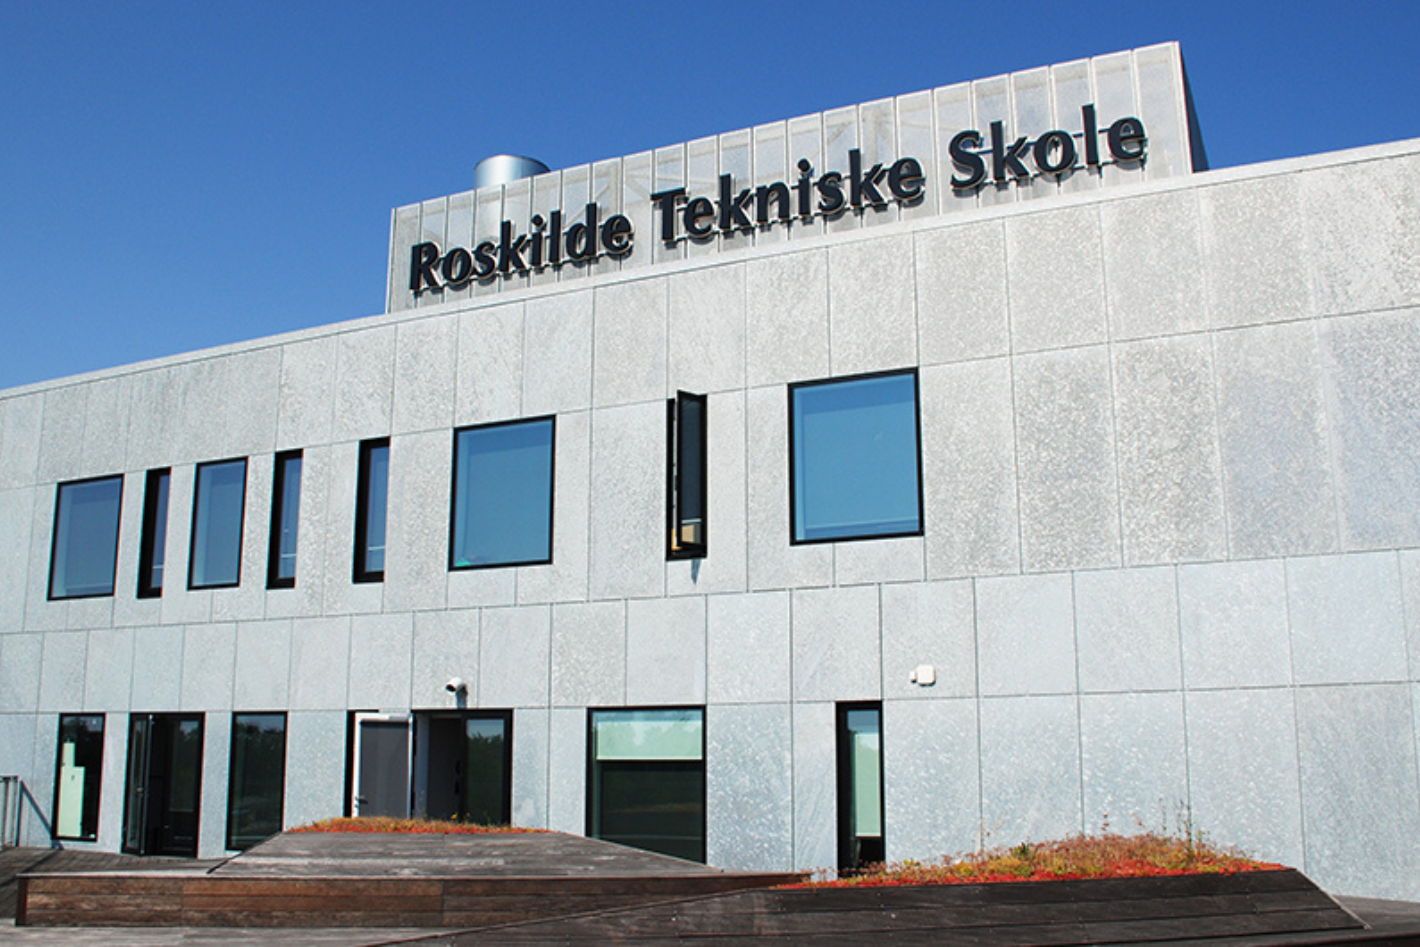 Roskilde tekniske skole